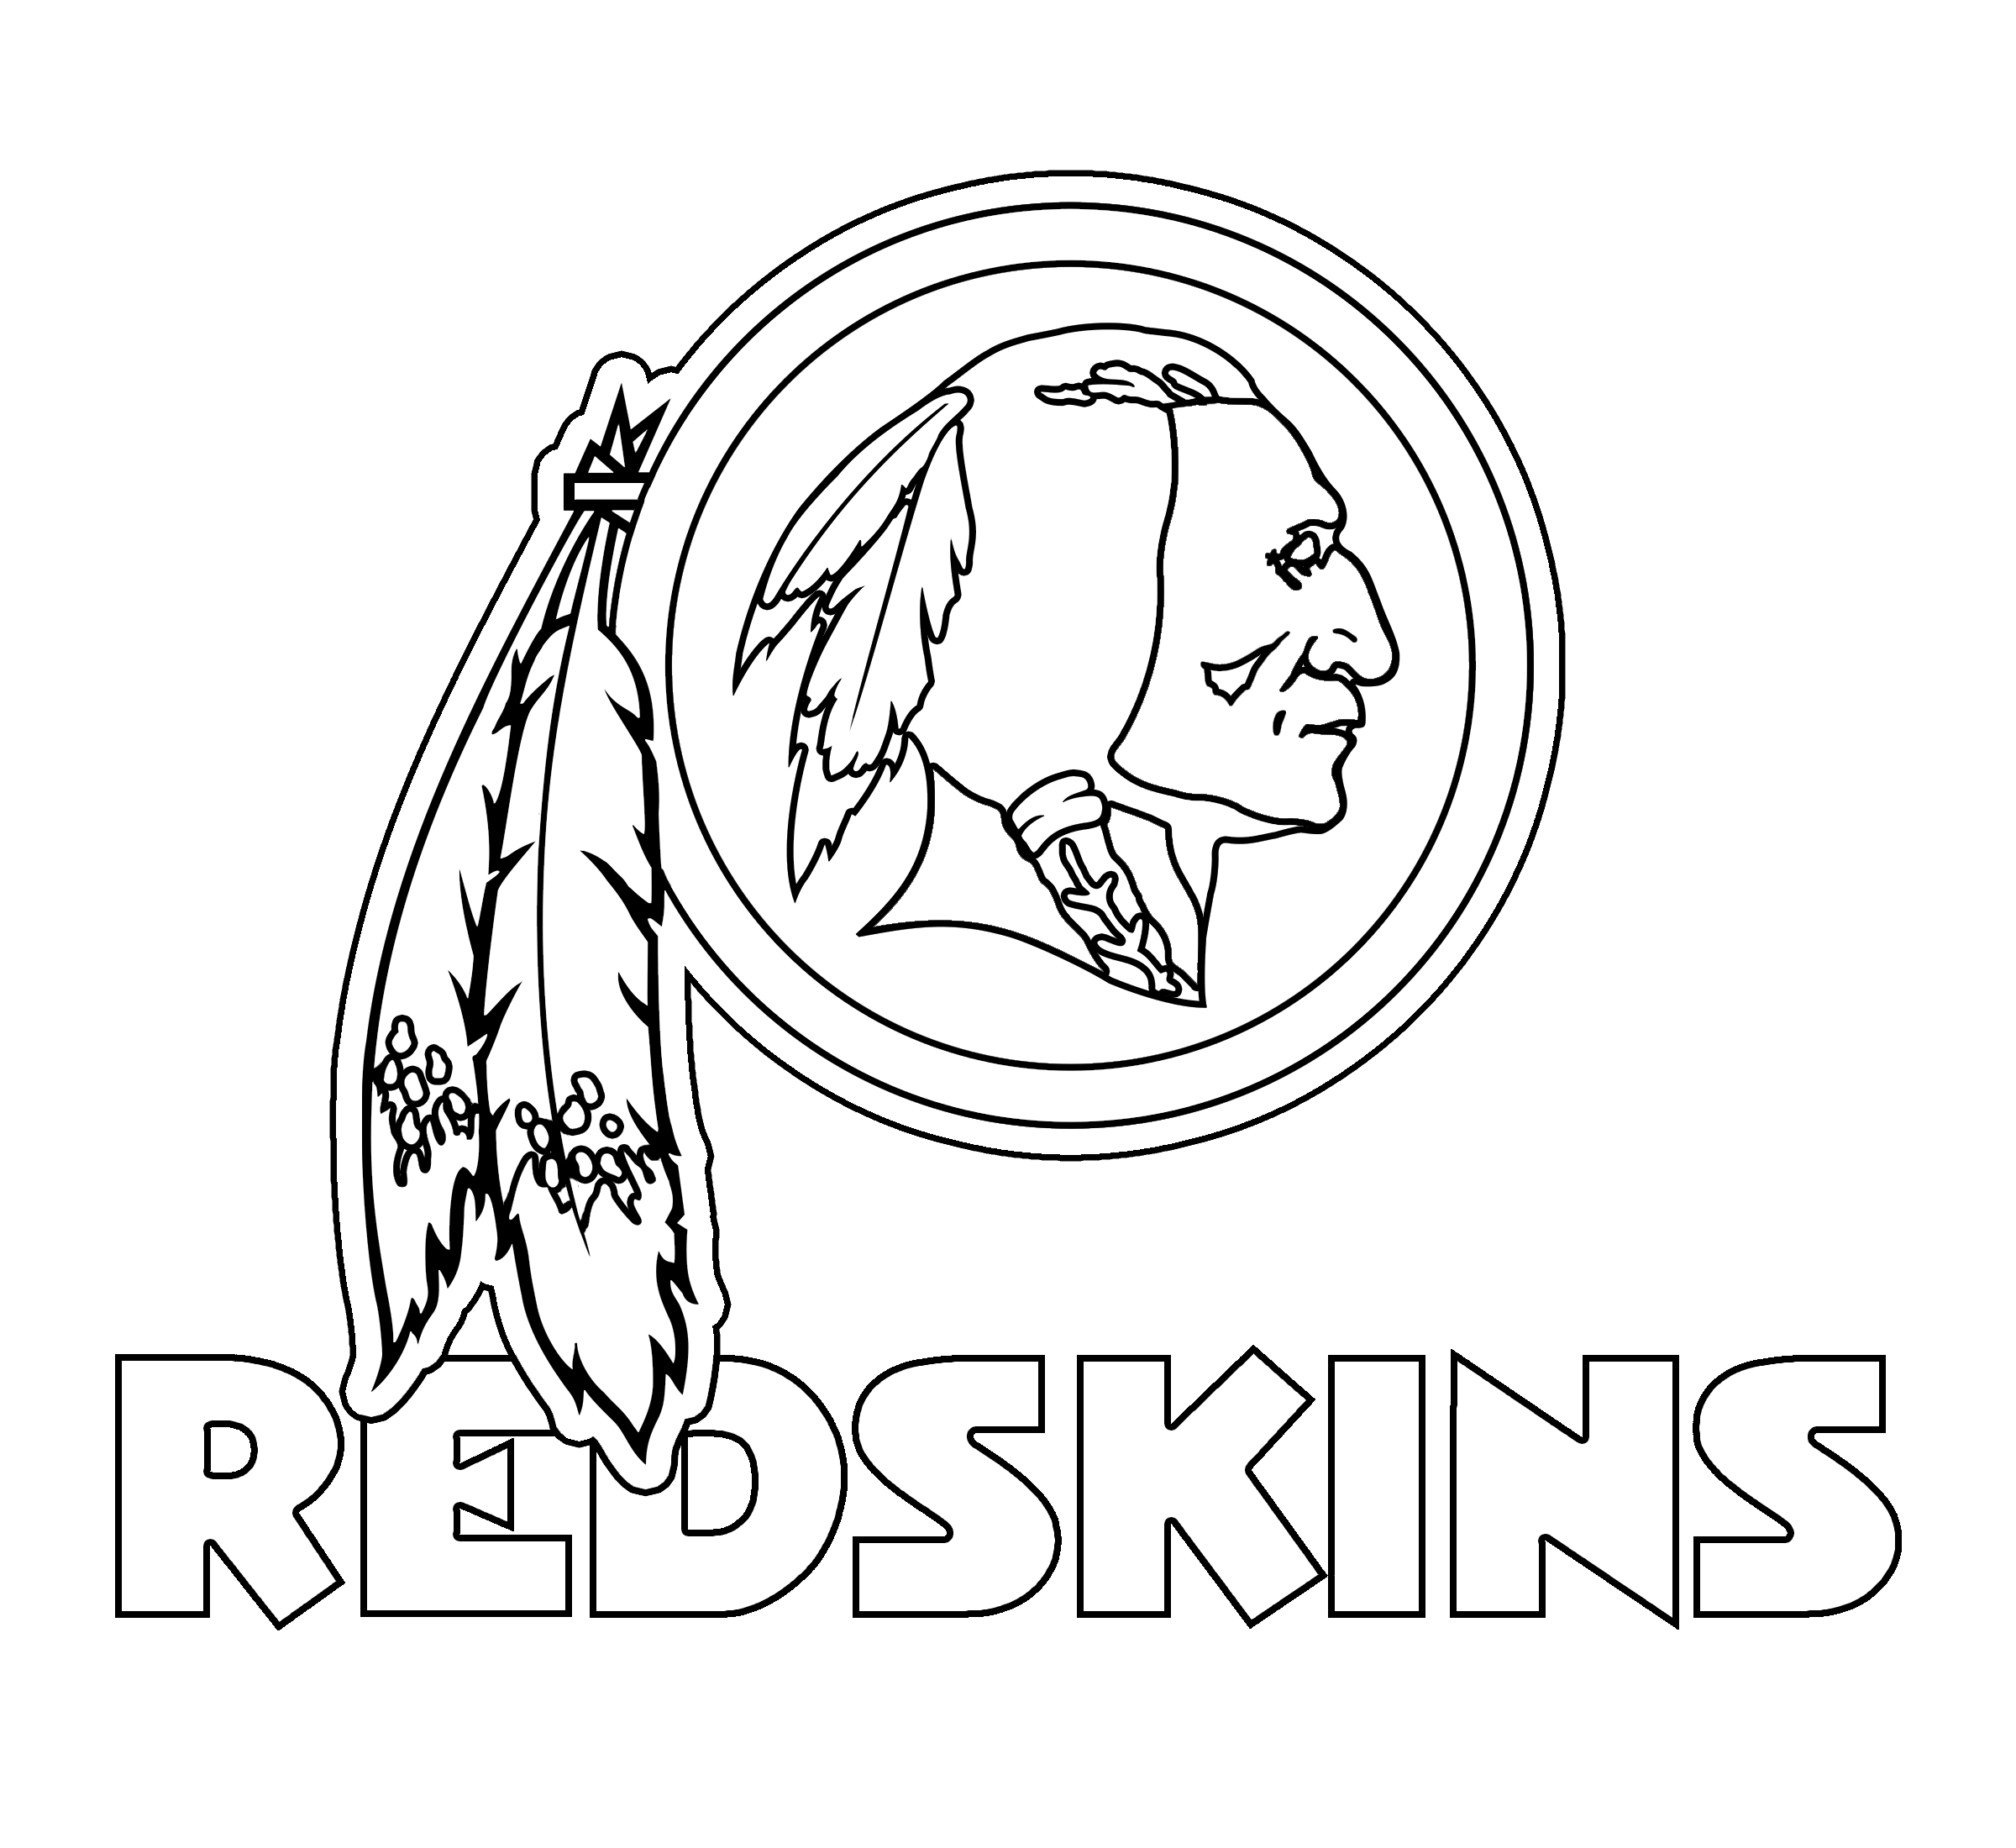 NFL Redskins Logo - Washington Redskins Logo PNG Transparent & SVG Vector